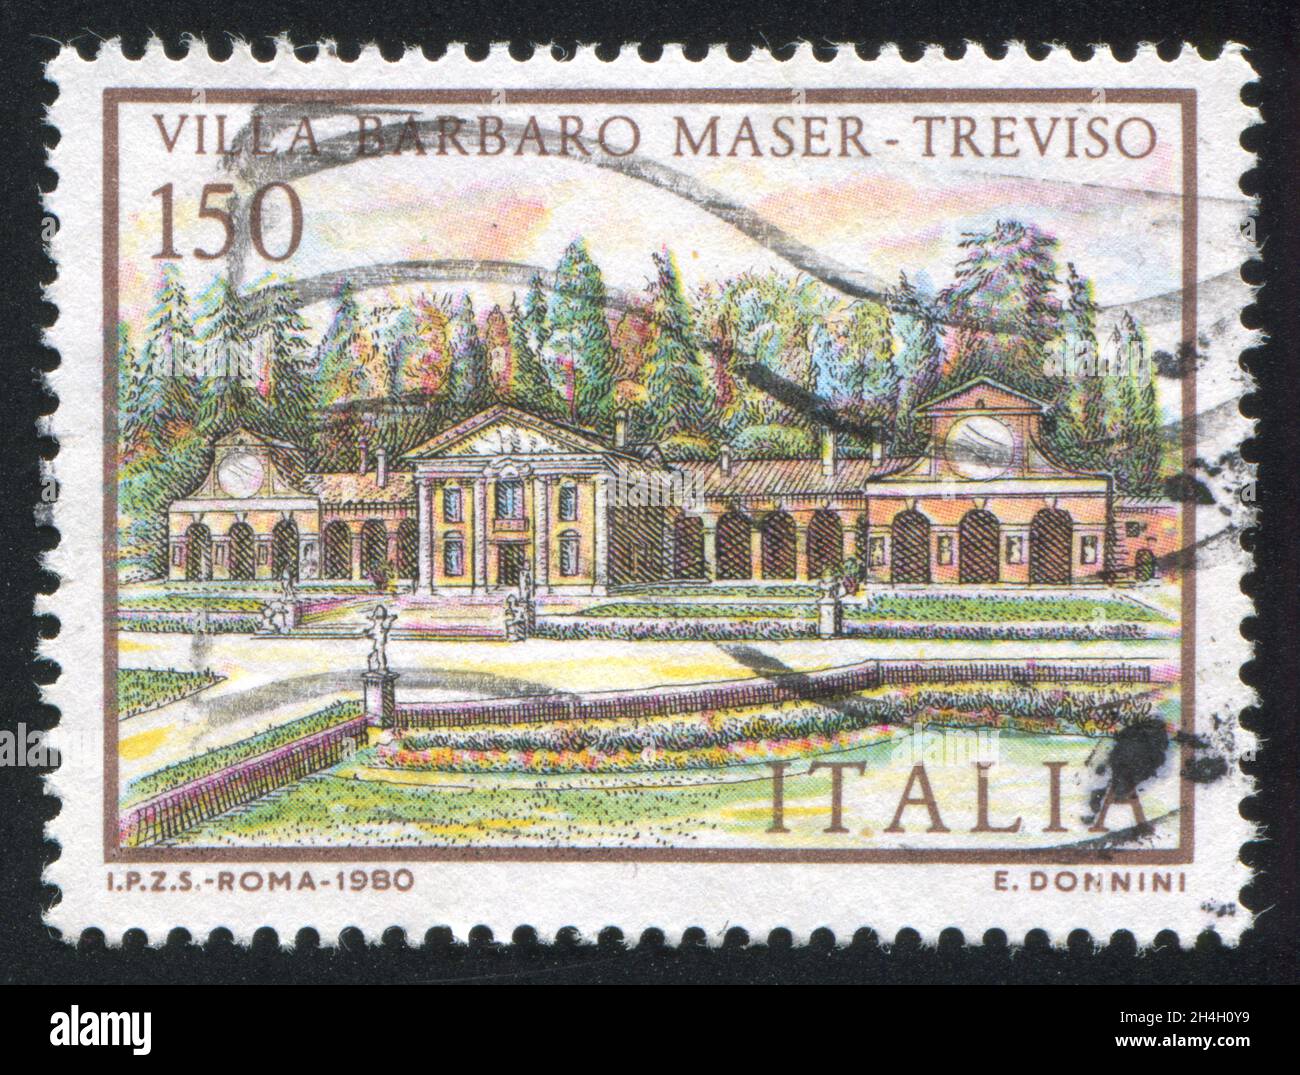 ITALIEN - UM 1980: Briefmarke gedruckt von Italien, zeigt Villa Barbaro Maser in Treviso, um 1980 Stockfoto